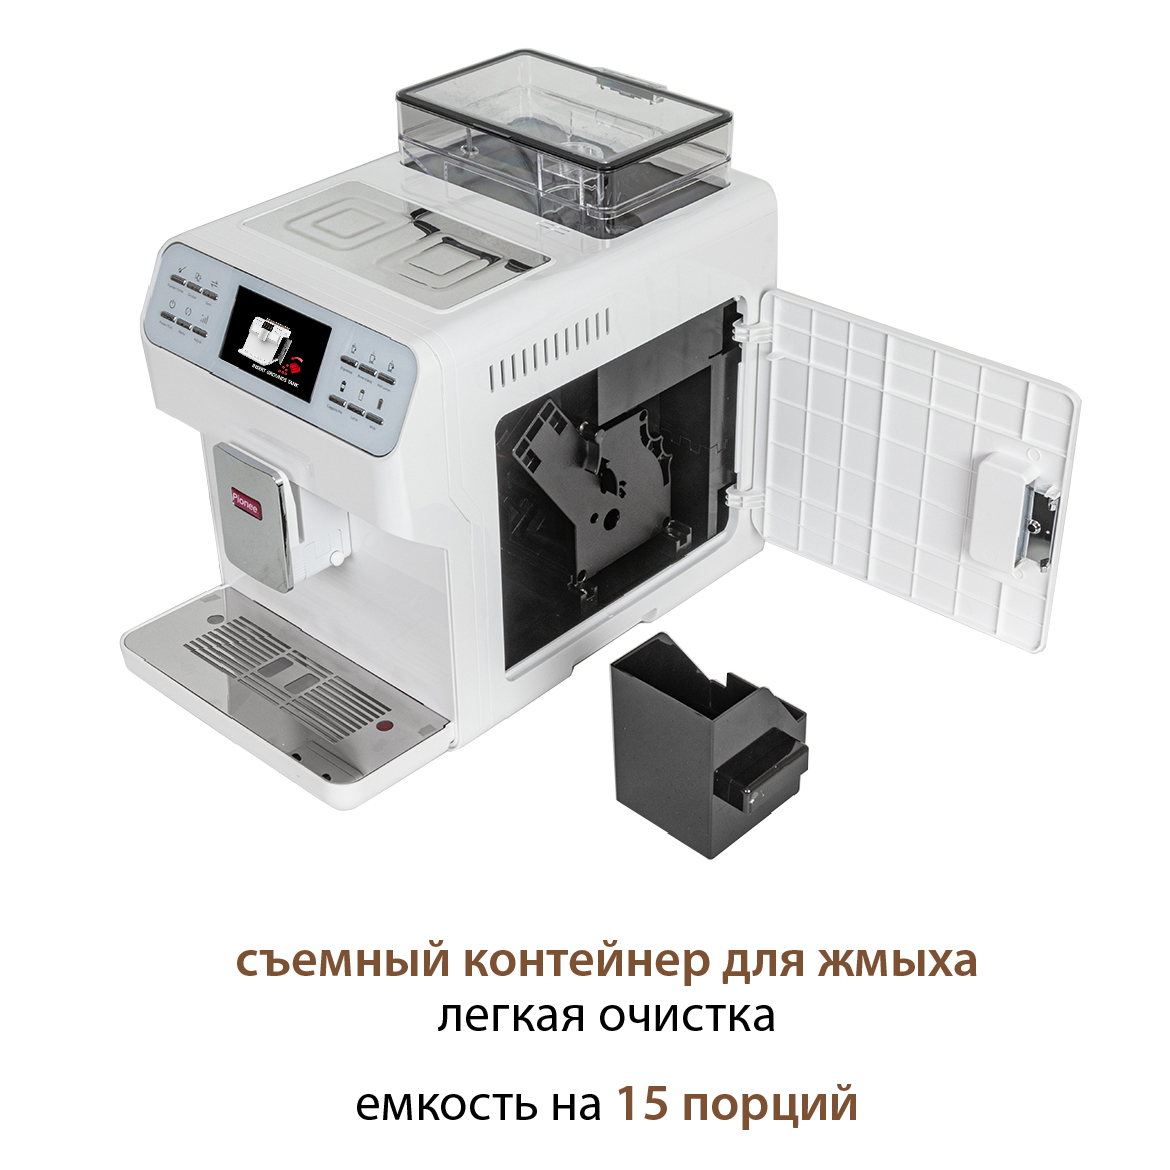 Автоматическая кофемашина Pioneer CMA009